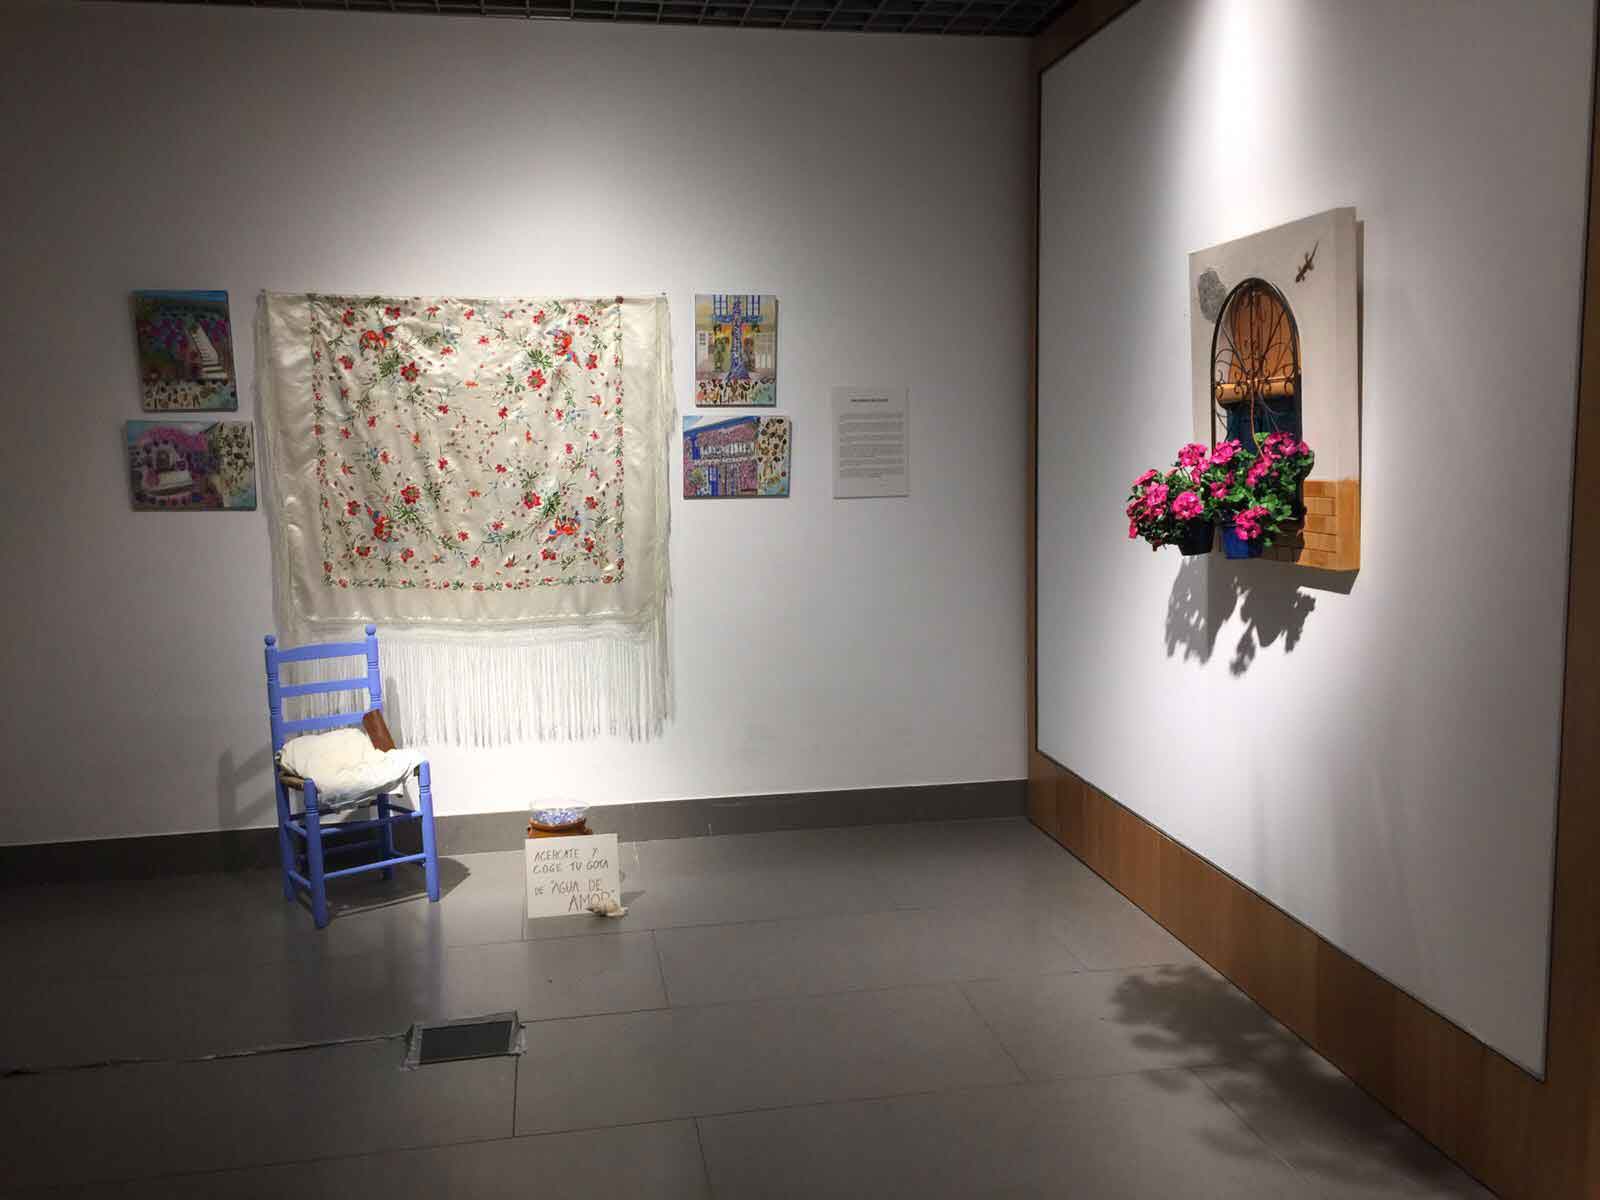 Muestra de la exposición 'El arte y los patios cordobeses' 2017 en la Fundación Cajasol